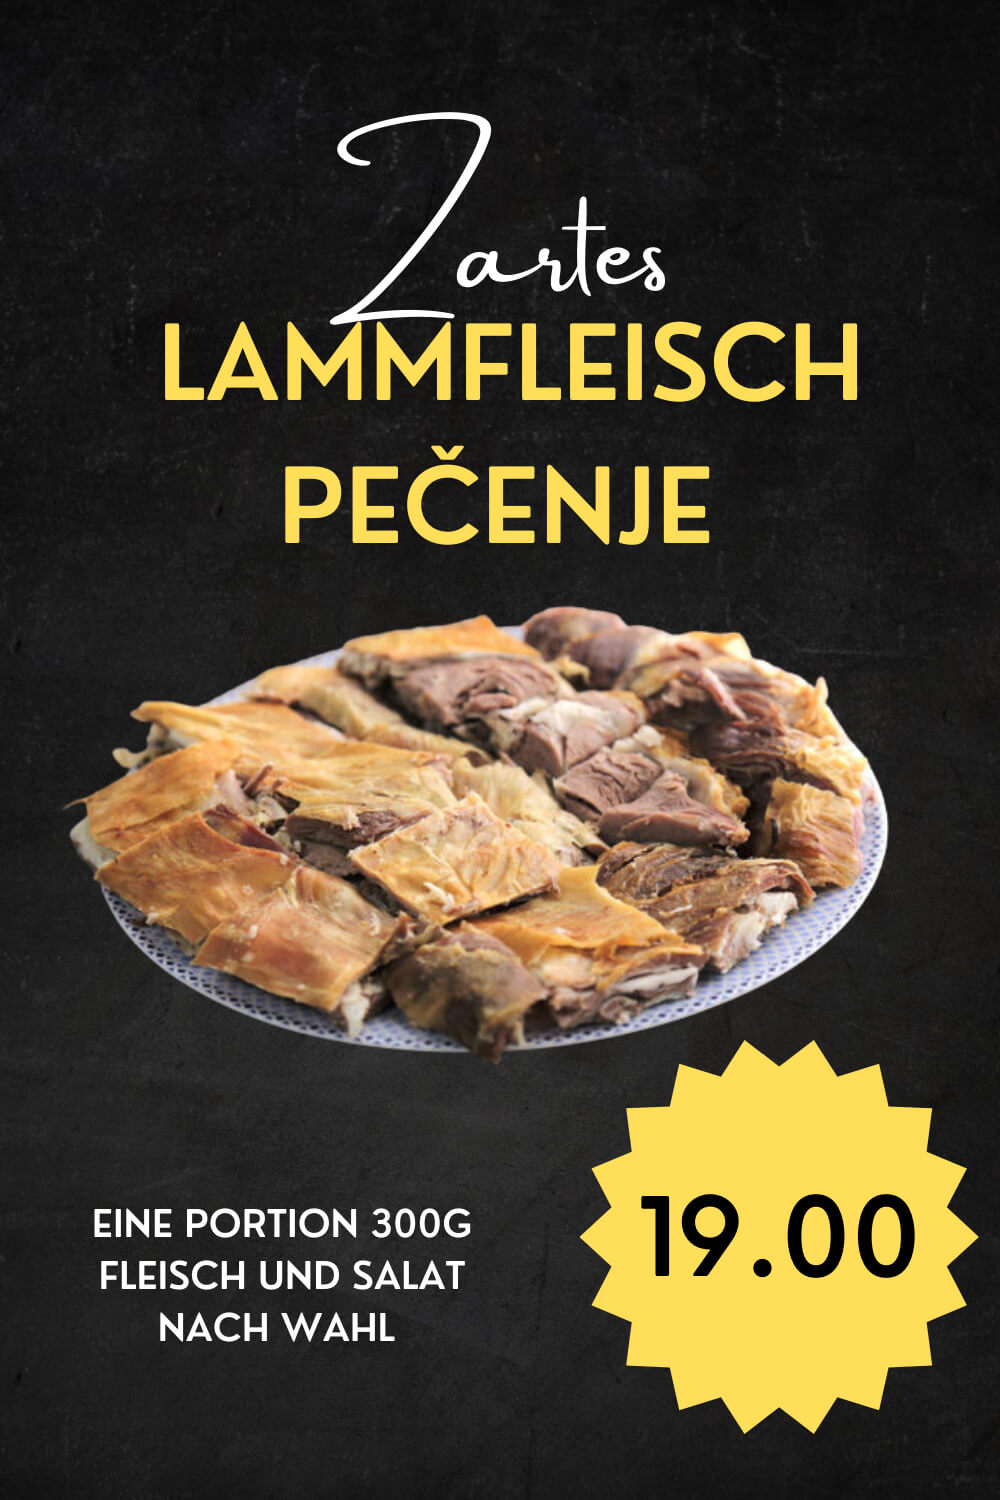 Taste og Balkan - Lammfleisch Pečenje